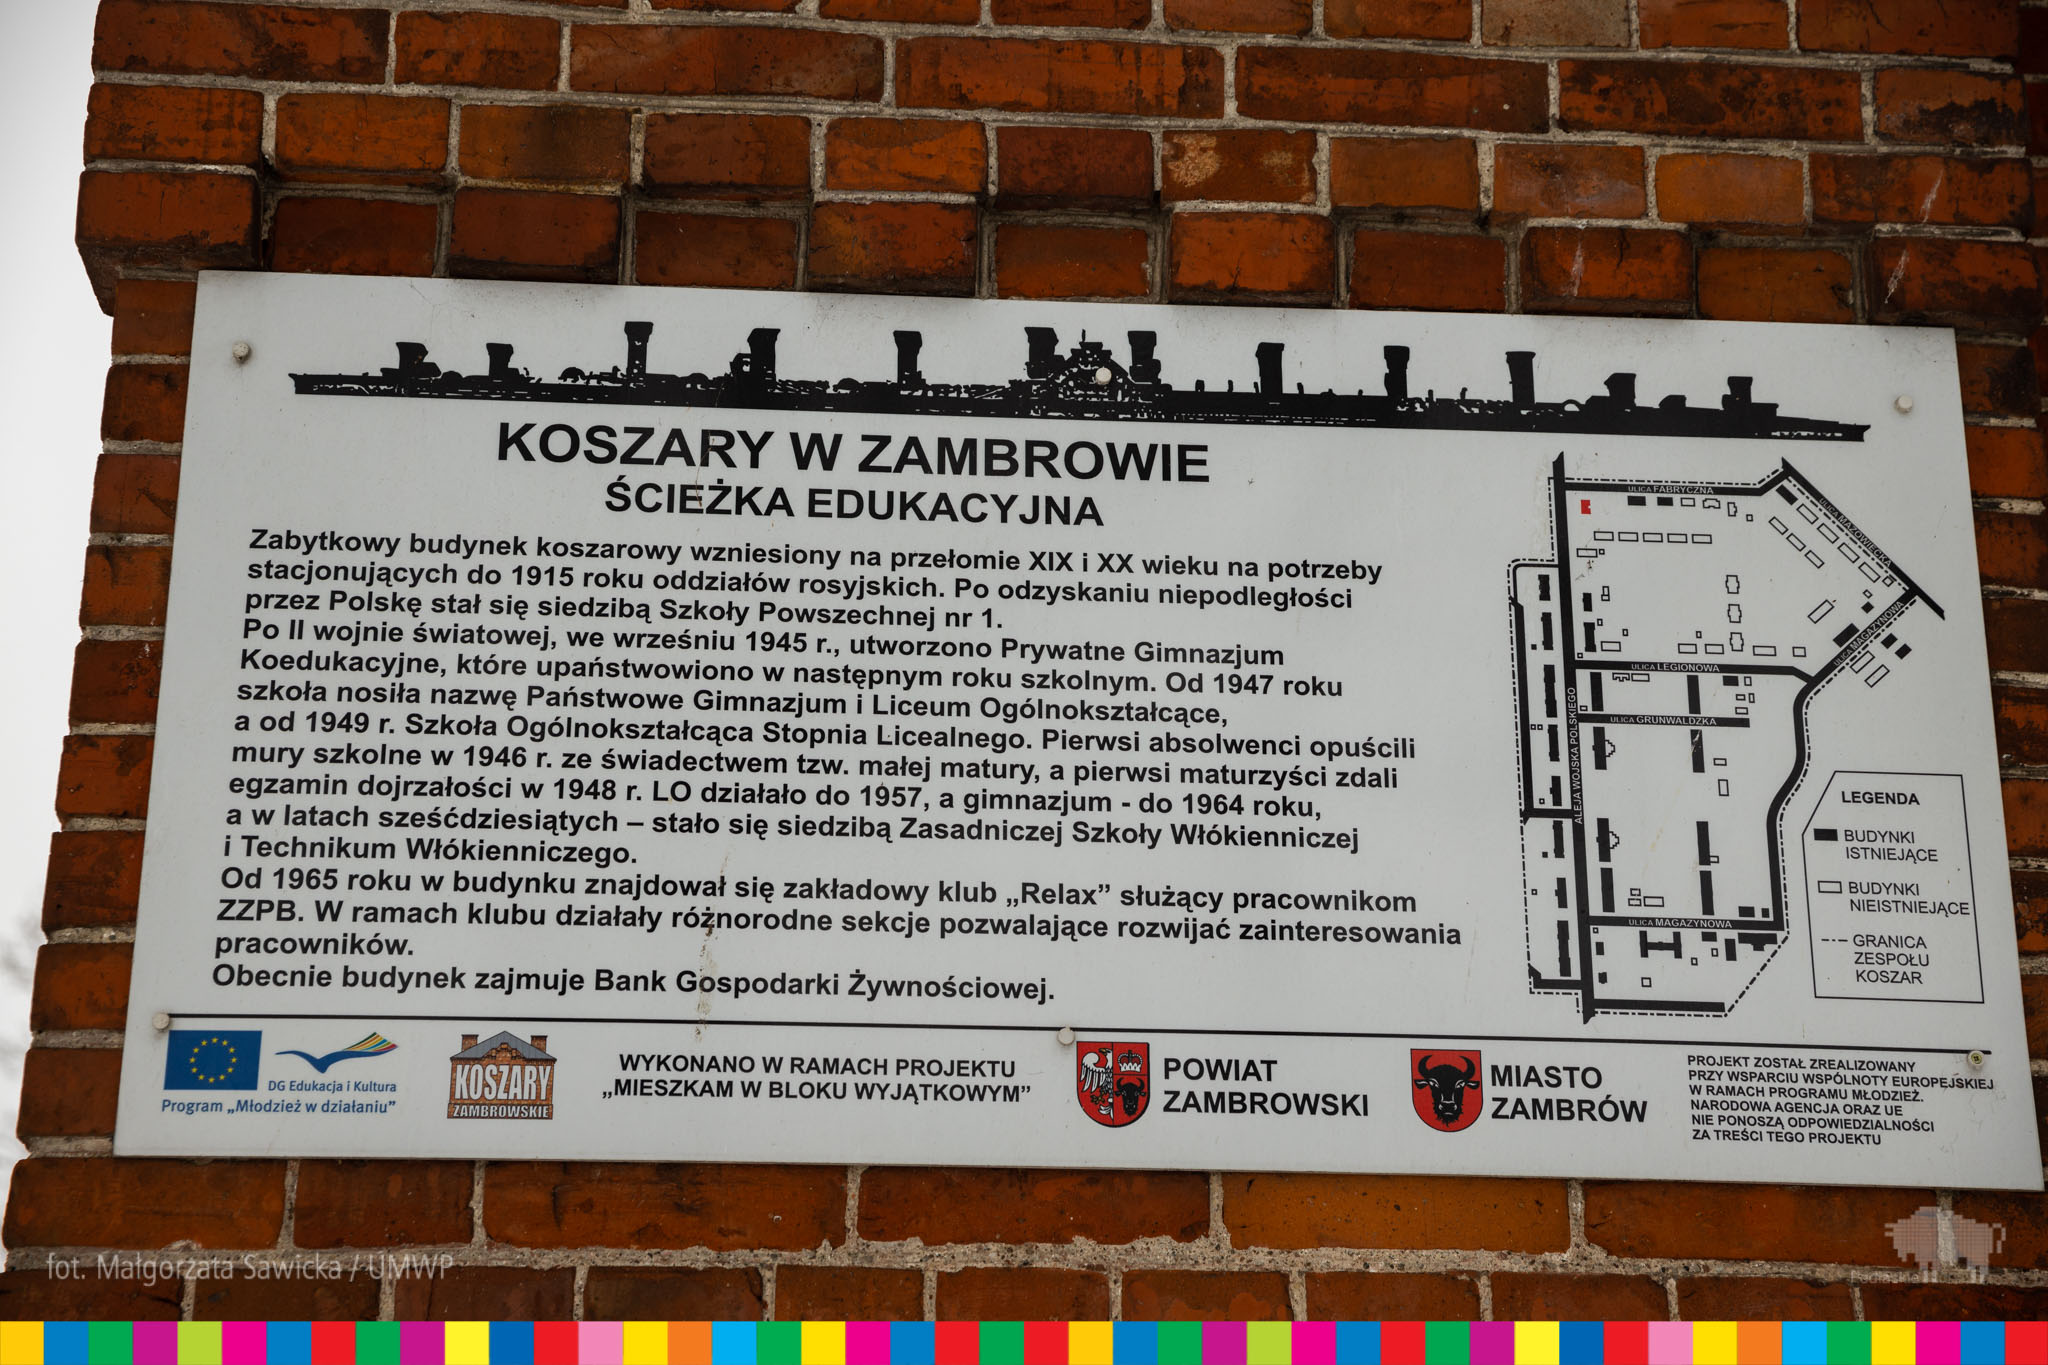 Tablica z napisem Koszary w Zambrowie, Ścieżka Edukacyjna